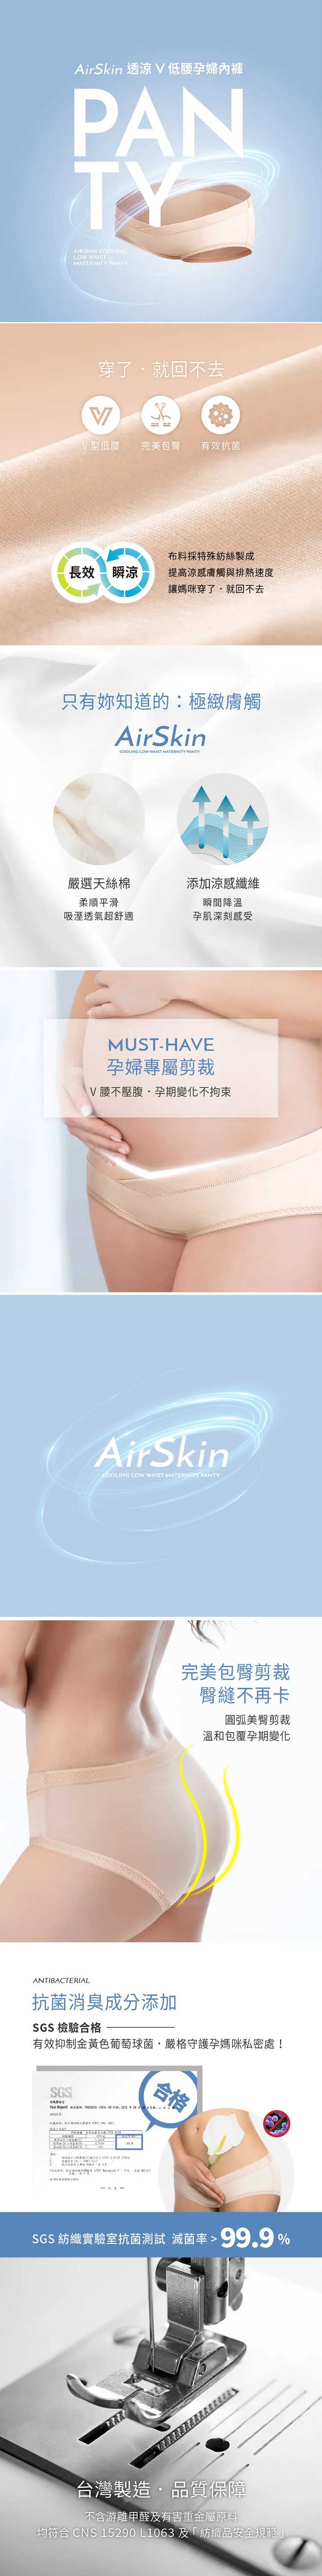 六甲村 AirSkin 低腰V型薄透凉孕妇内裤